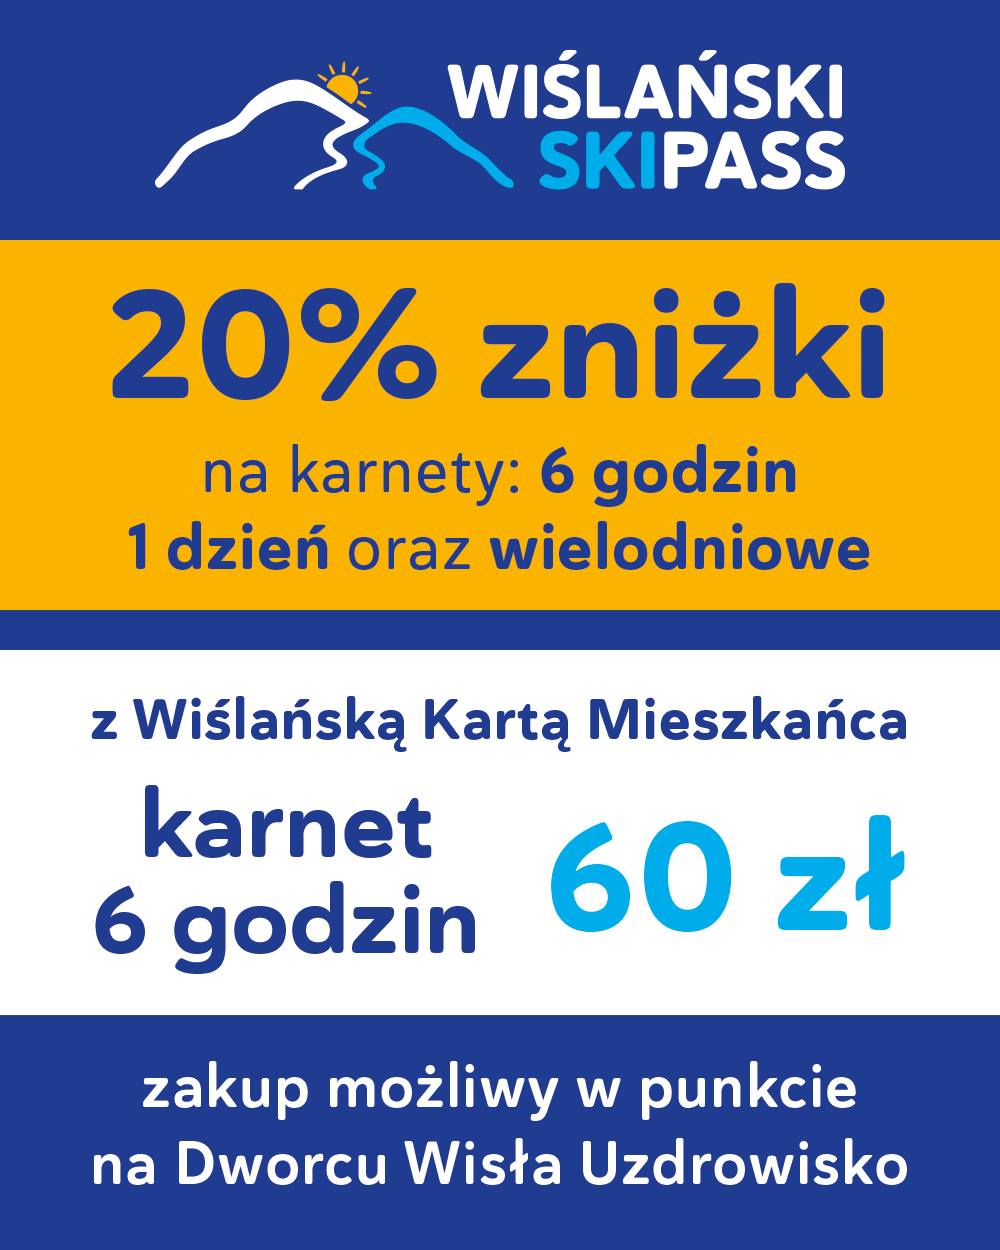 60 zł za 6 godzin jazdy od Wiślańskiego SKIPASS’u